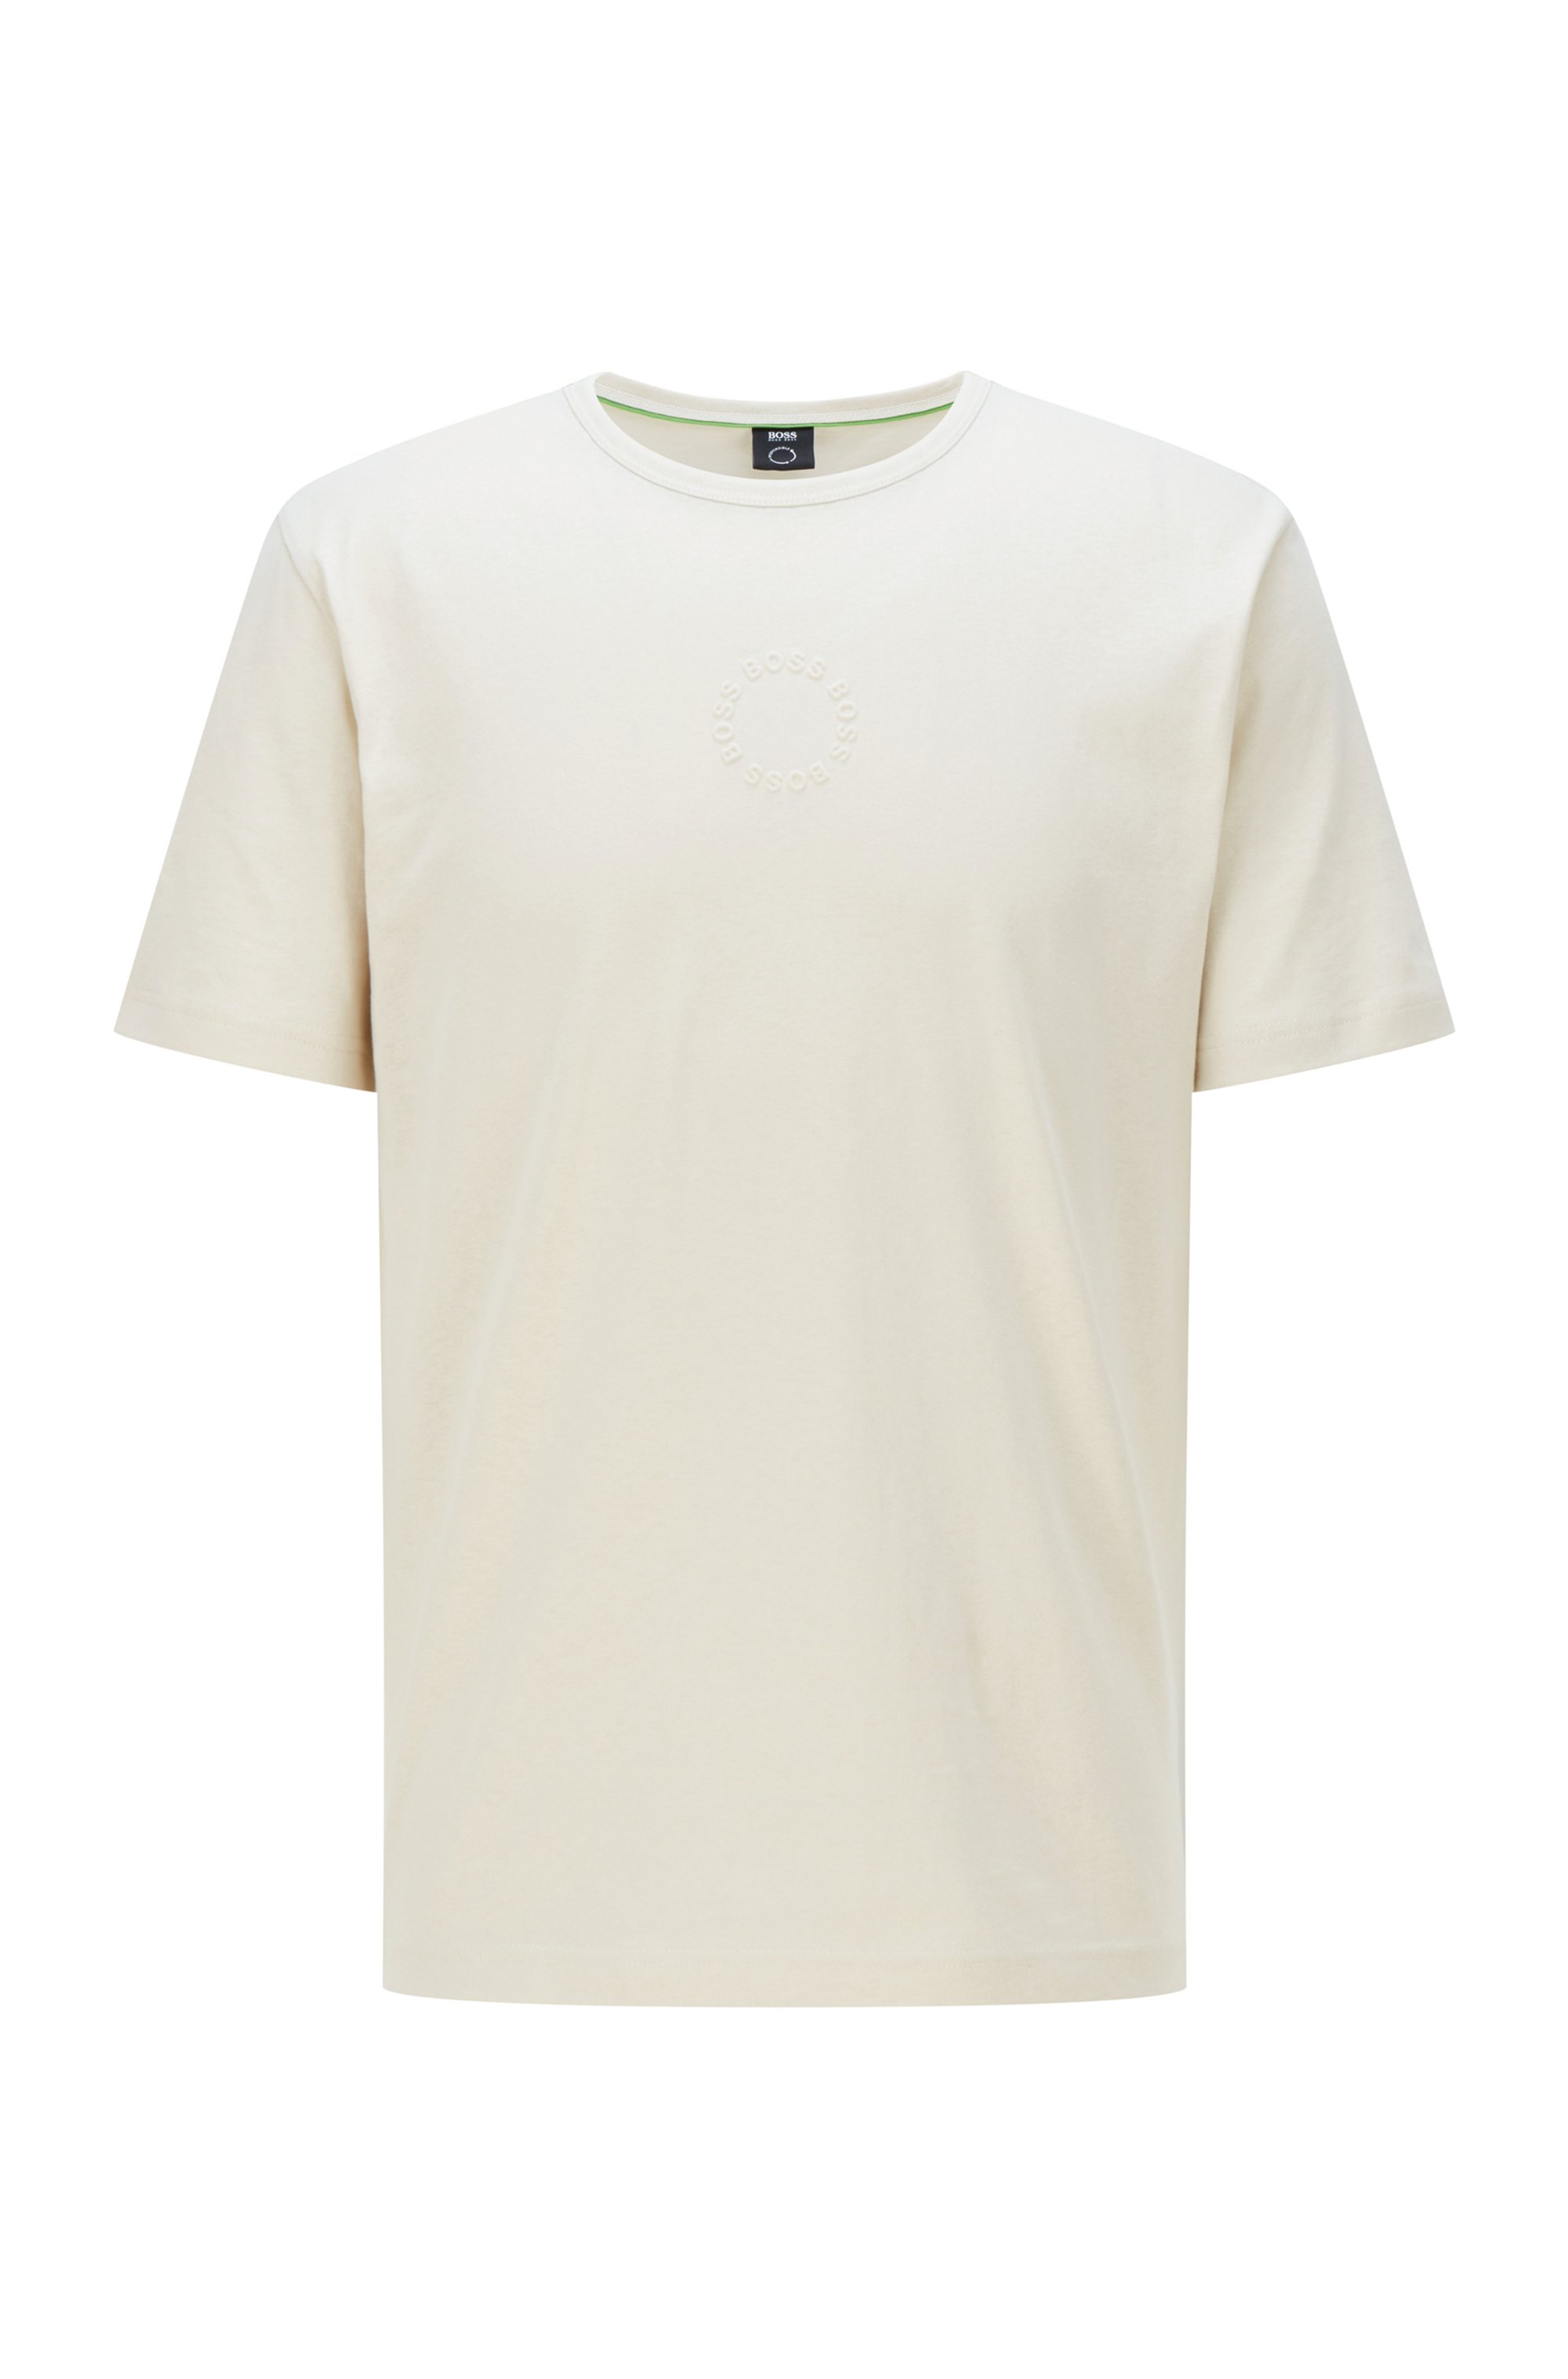 T-shirt Slim Fit en coton biologique à logos circulaires, Blanc